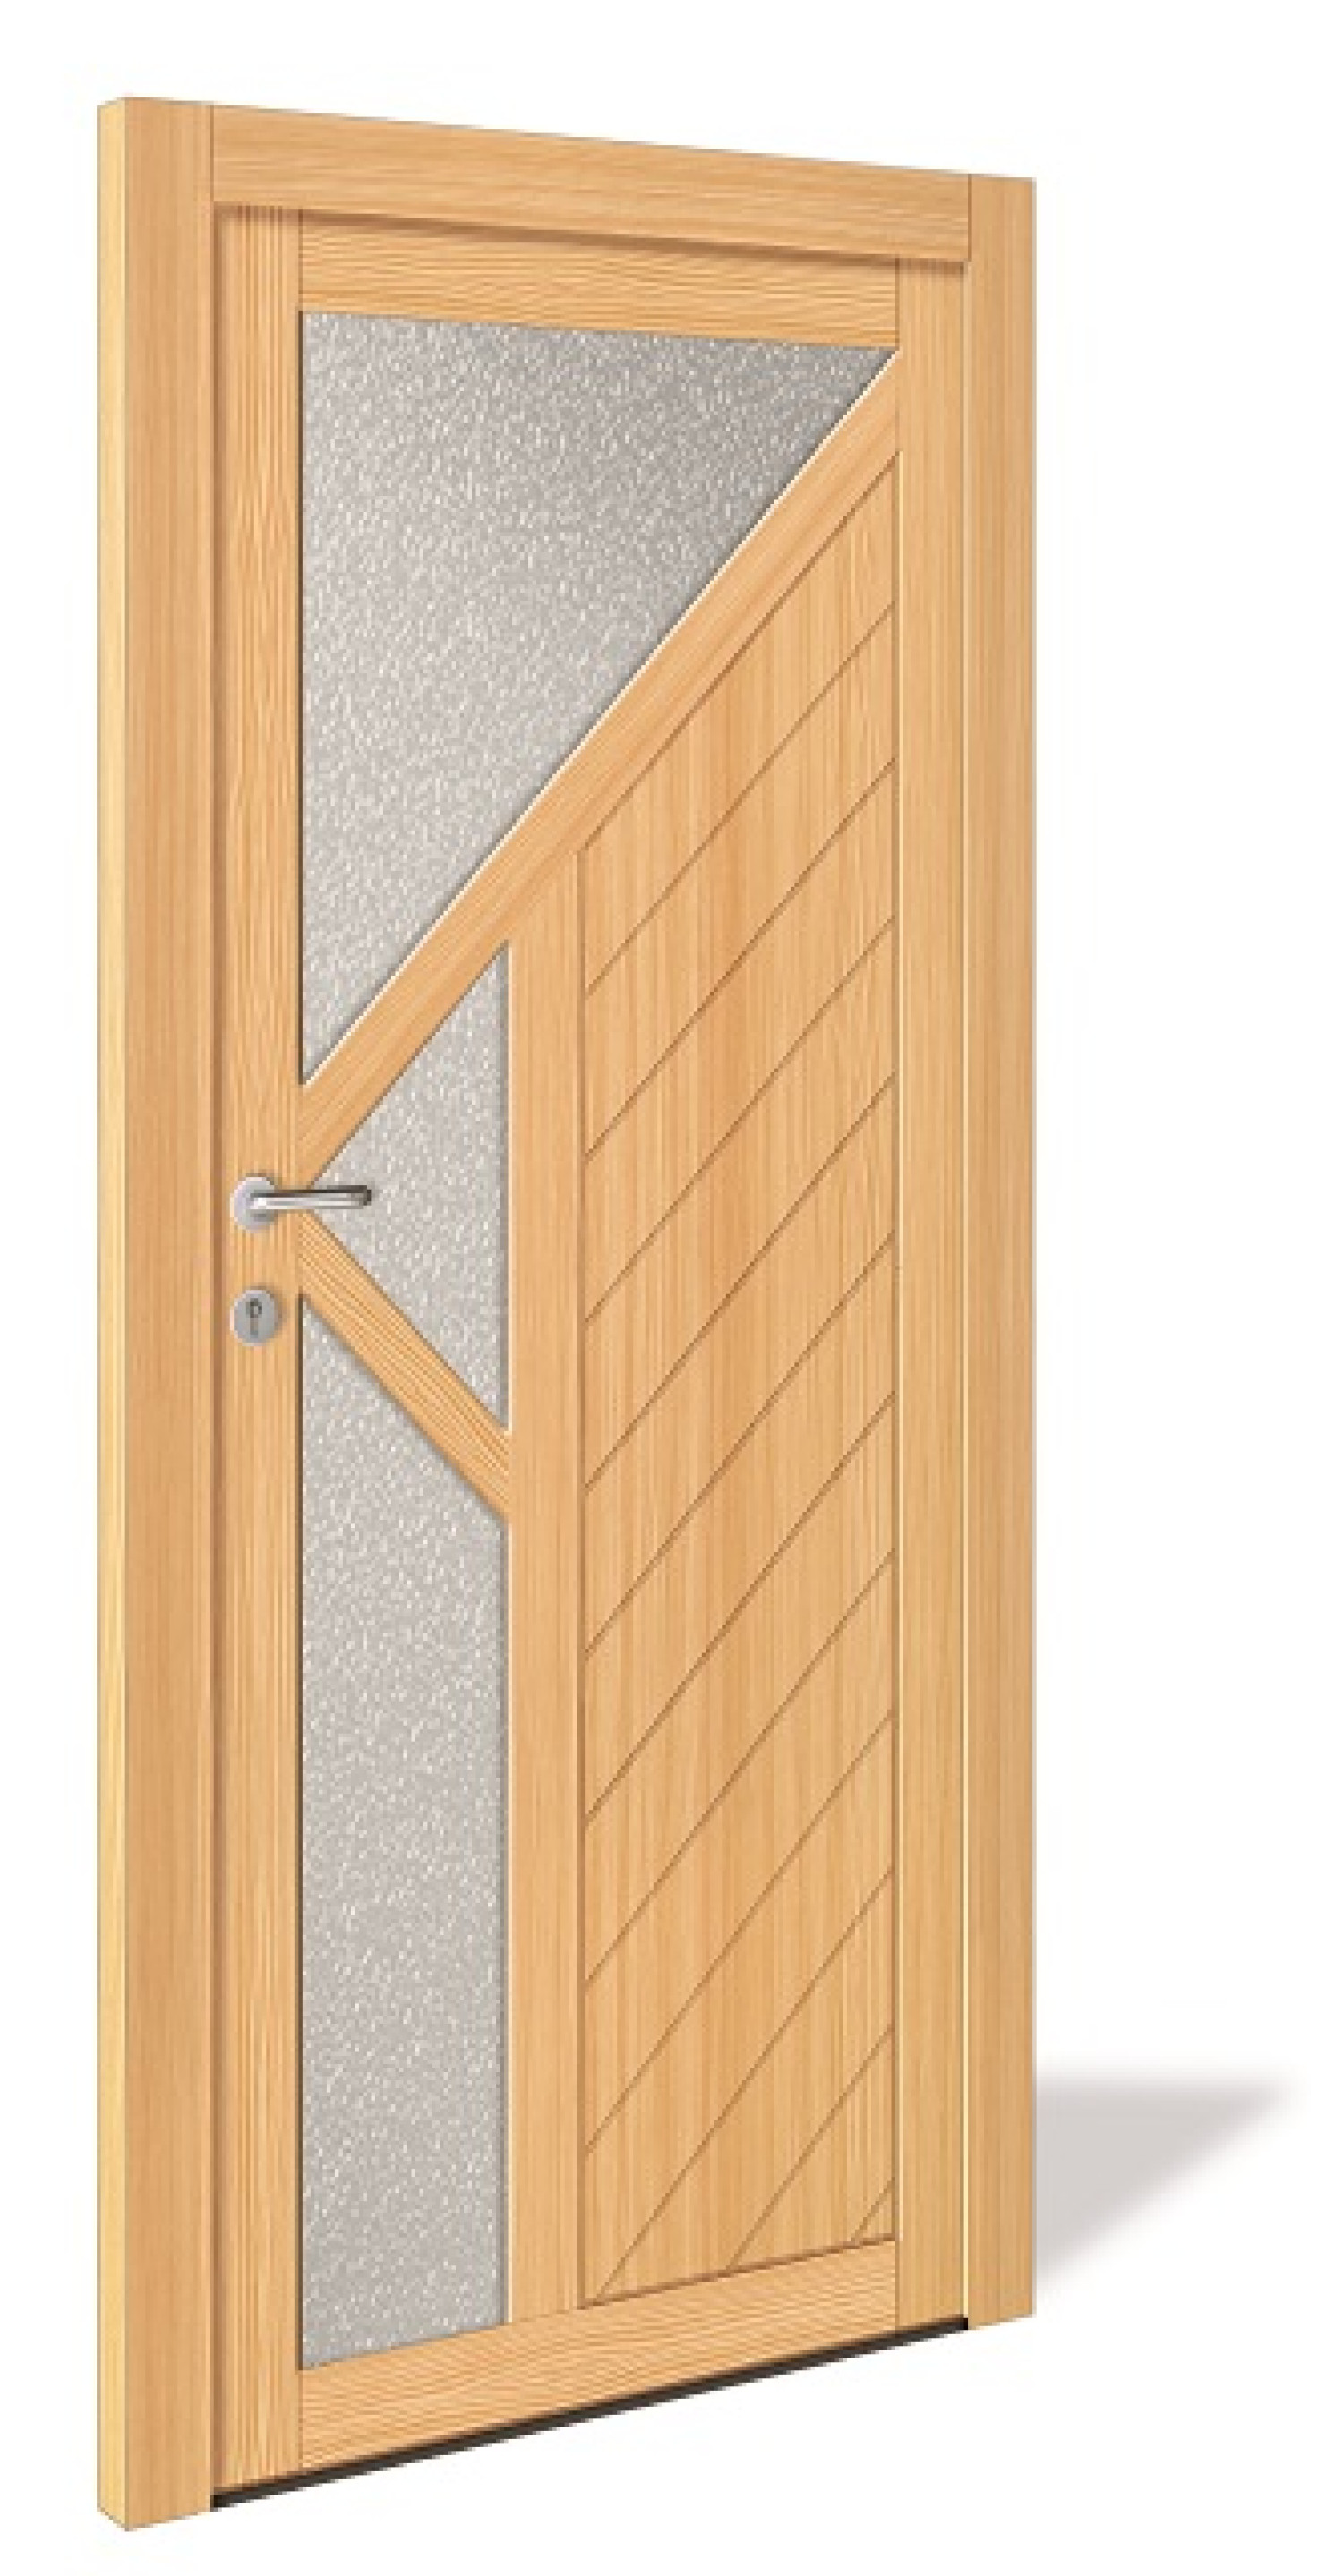 NET 1061 Holz Nebeneingangstür mit Glasausschnitt - Interio